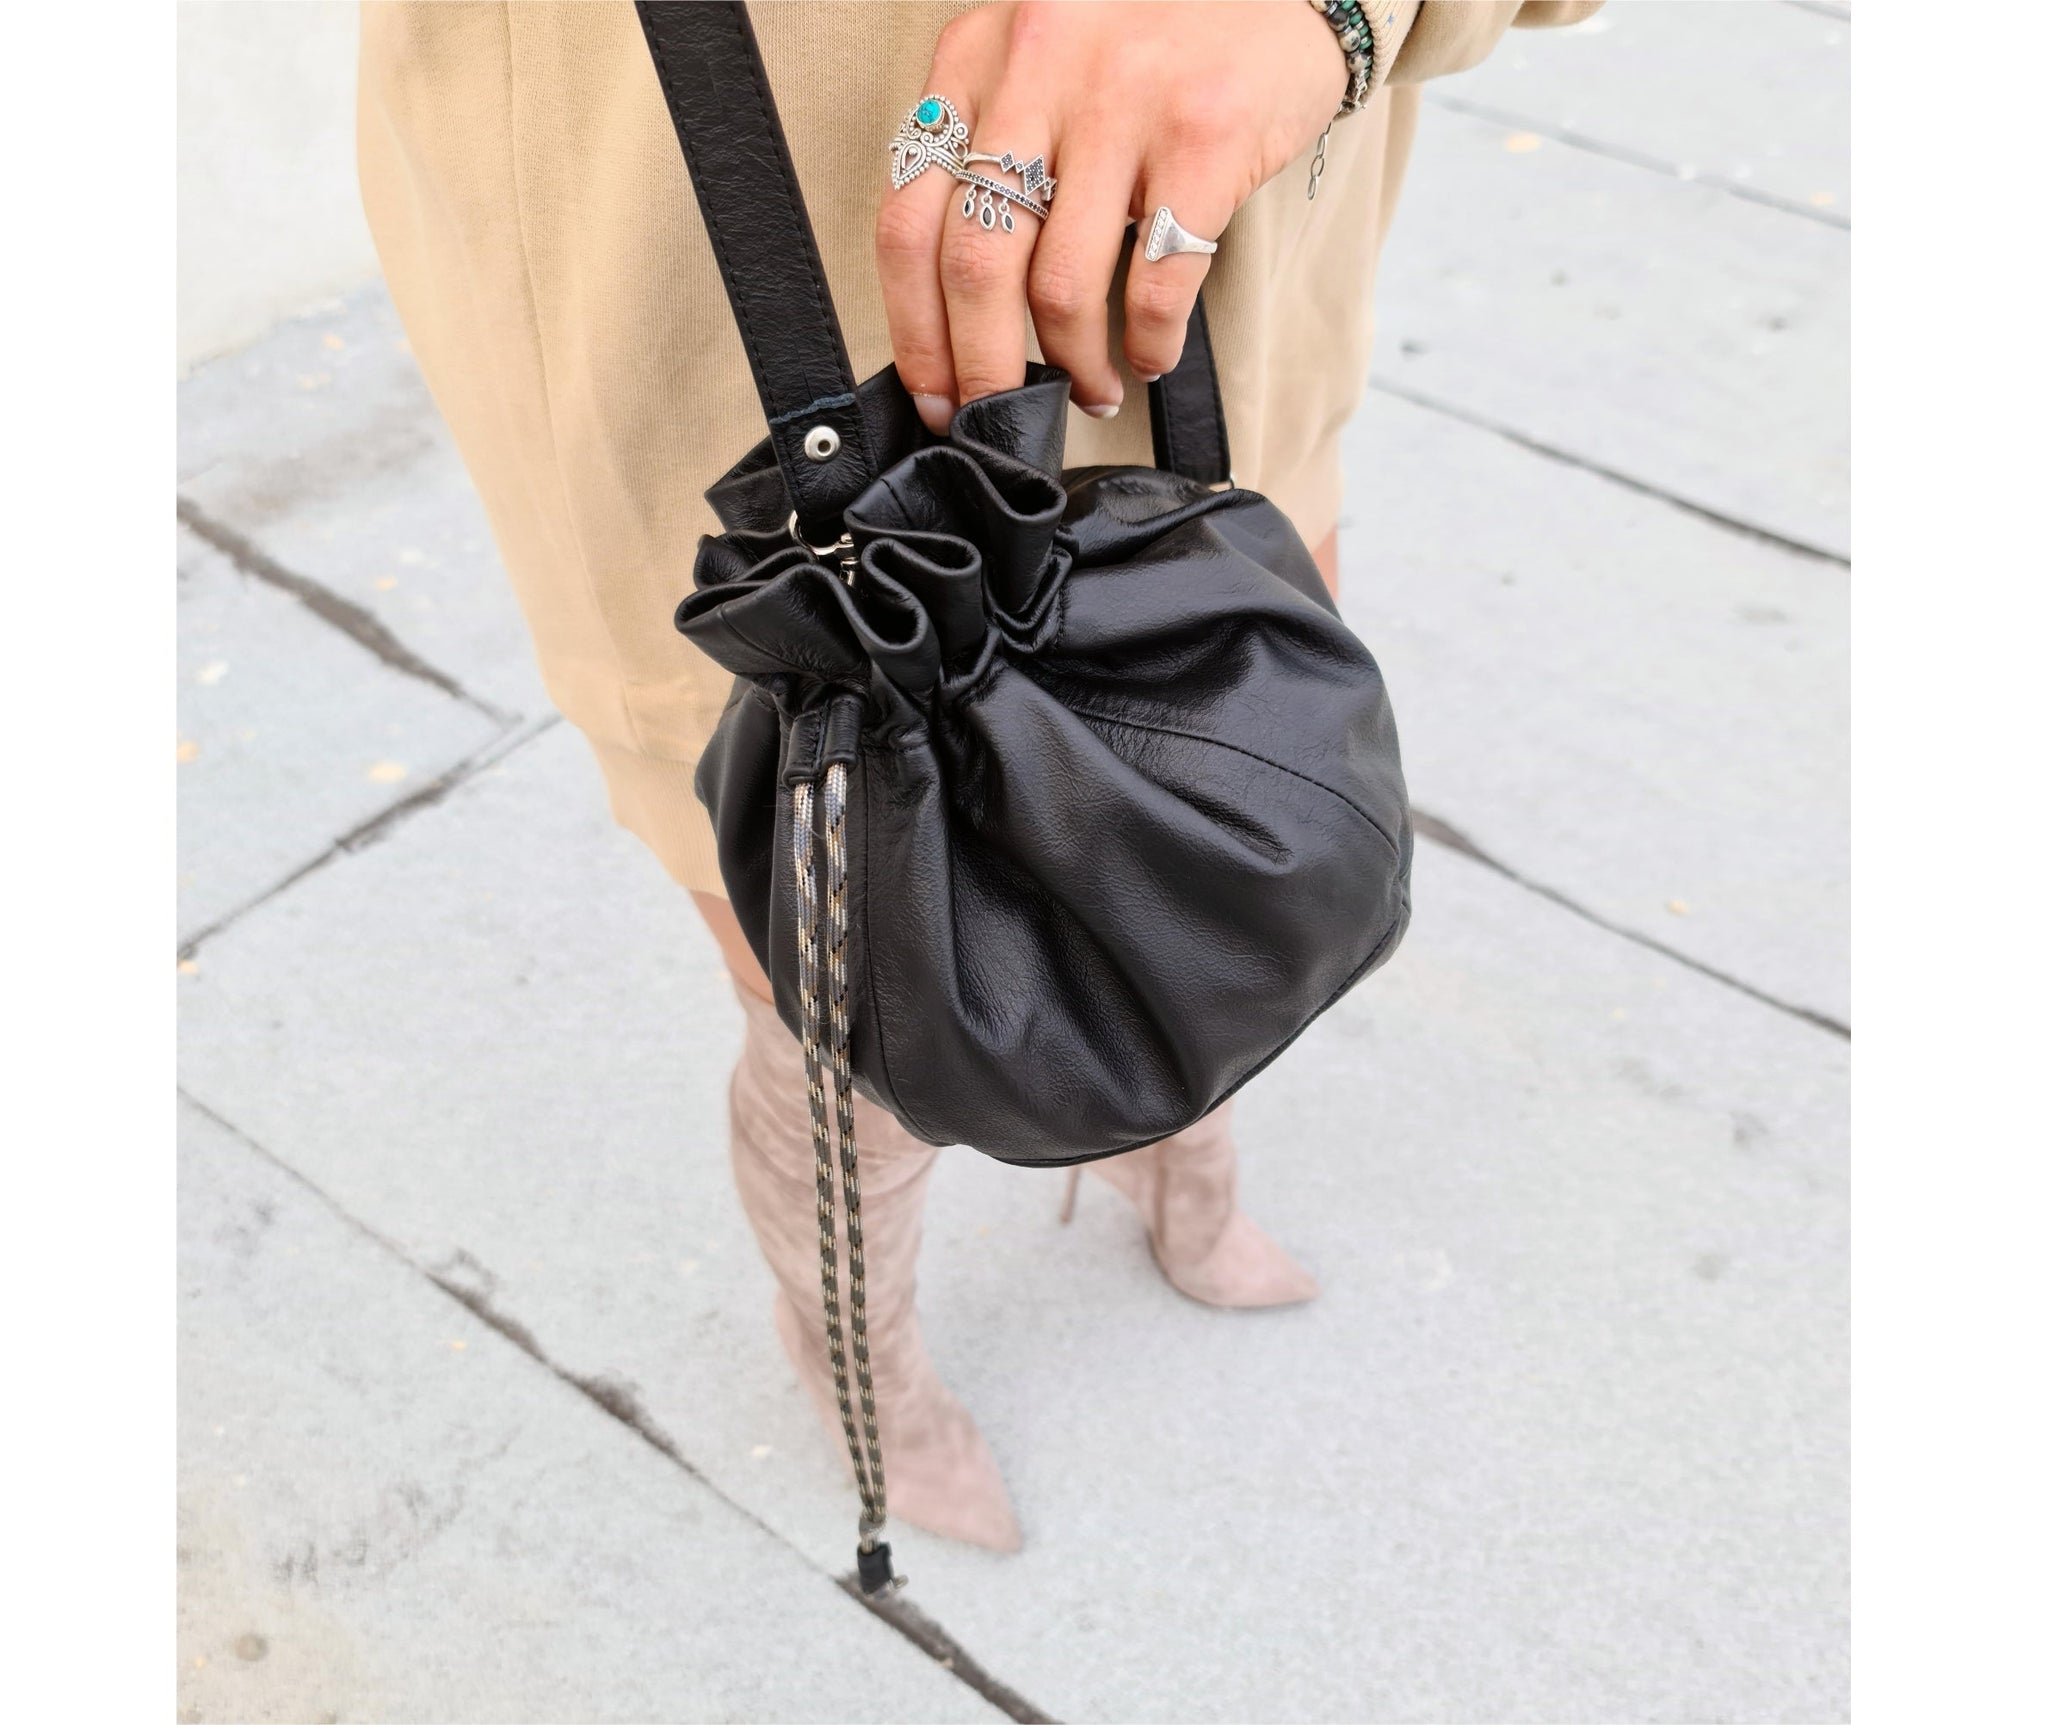 Tin Marin - Yaya Leather Bucket Bag with Mai Woven Bag Strap – The